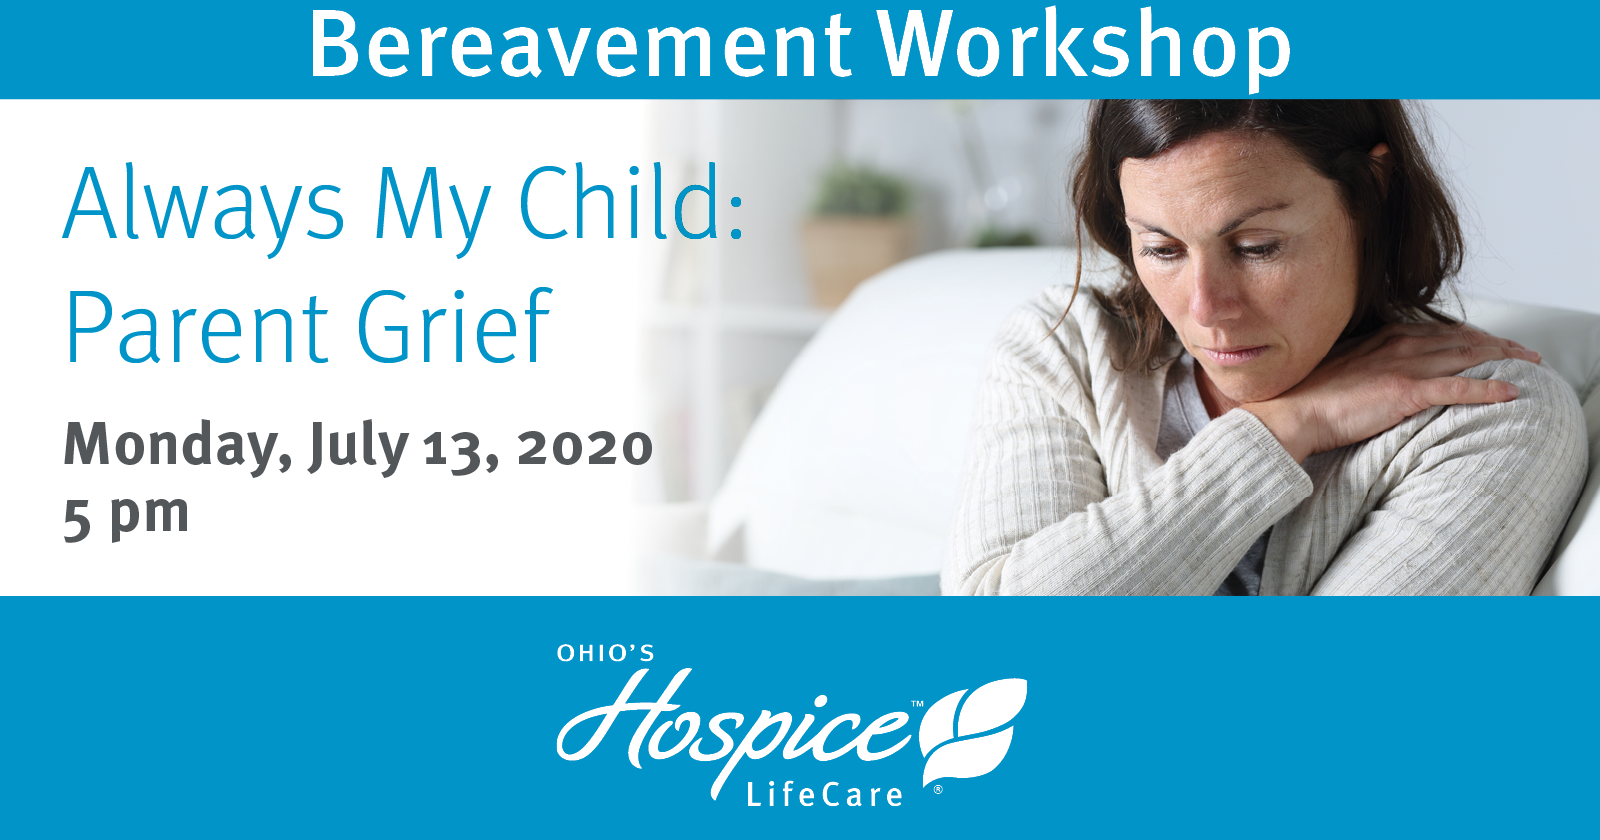 Bereavement Workshop - "Always My Child: Parent Grief"